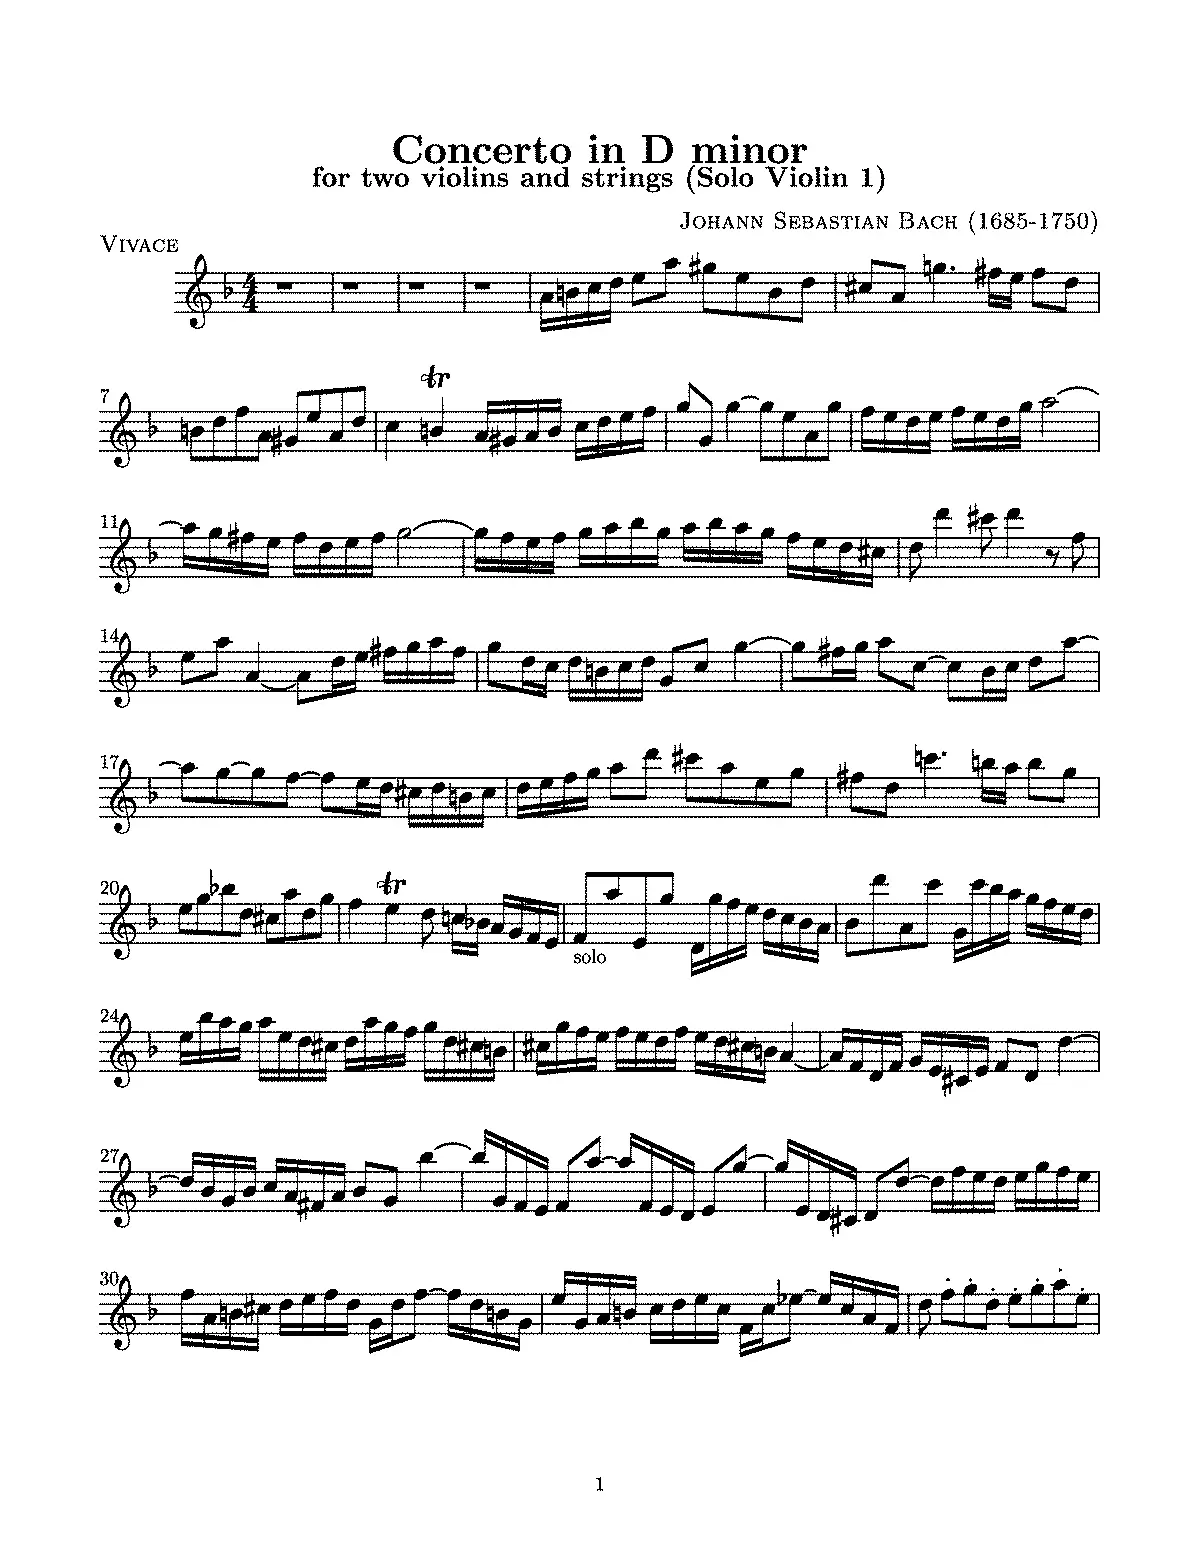 concierto para dos violines bach imslp - Did Bach compose concerto